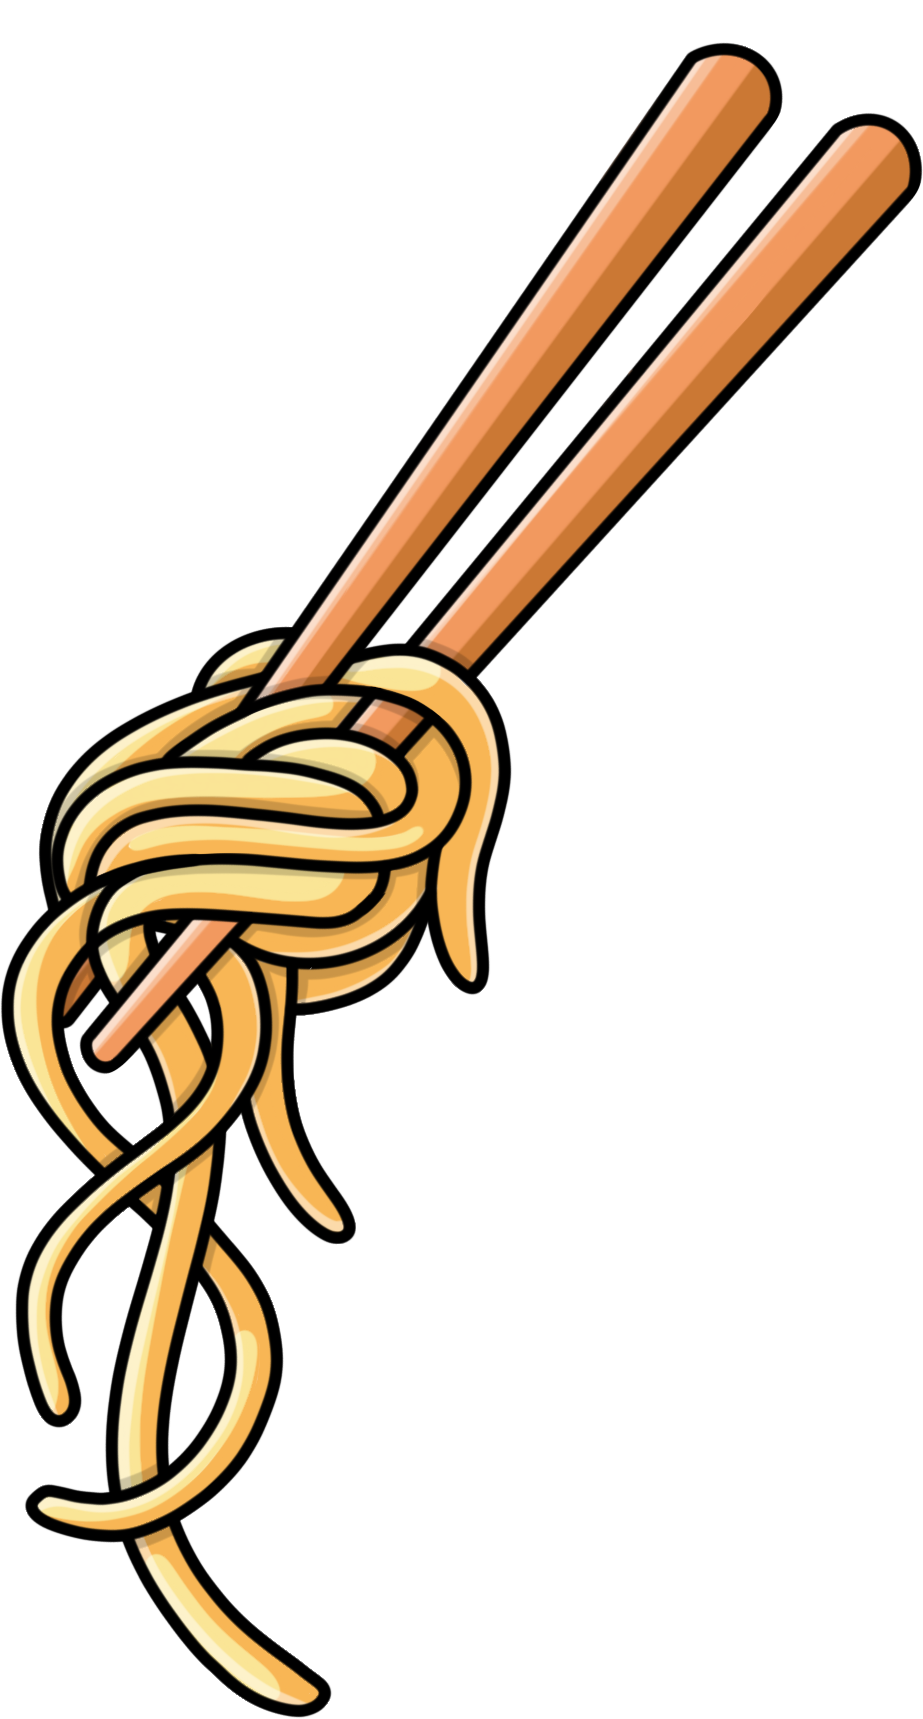 Vector Noodles Chopsticks Free Download Image PNG Image